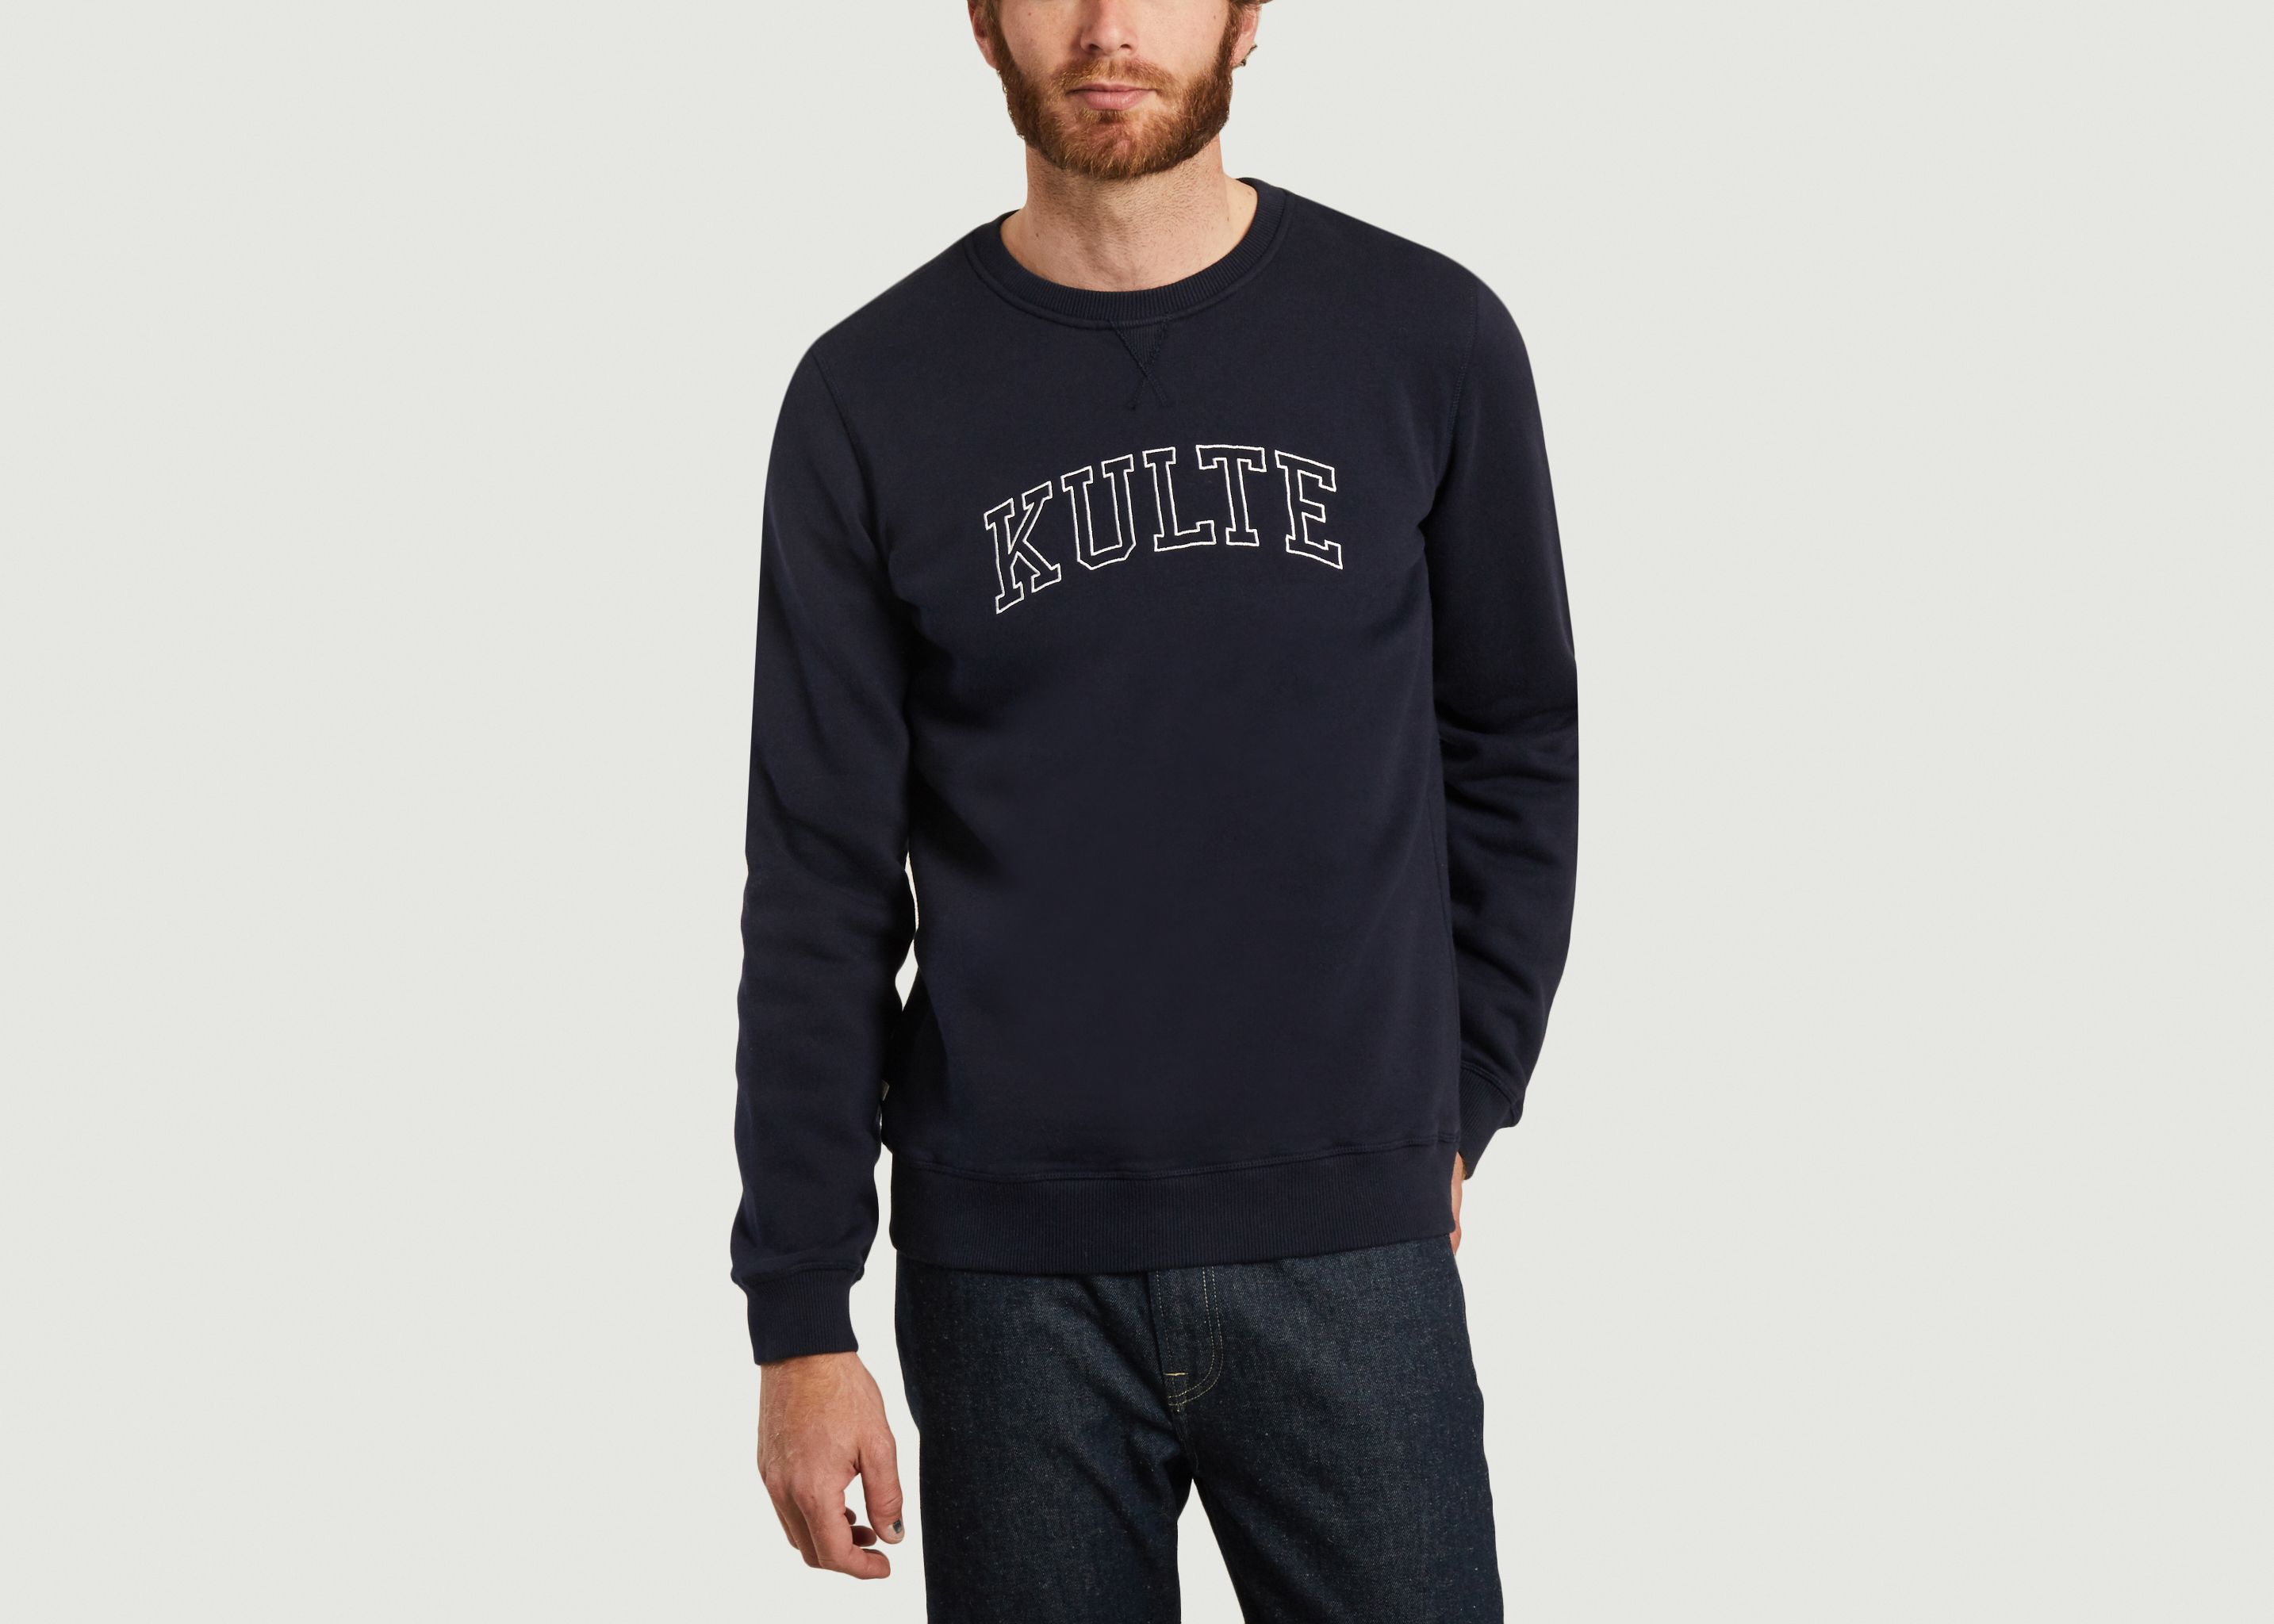 Corpo Athletic Sweatshirt - Kulte